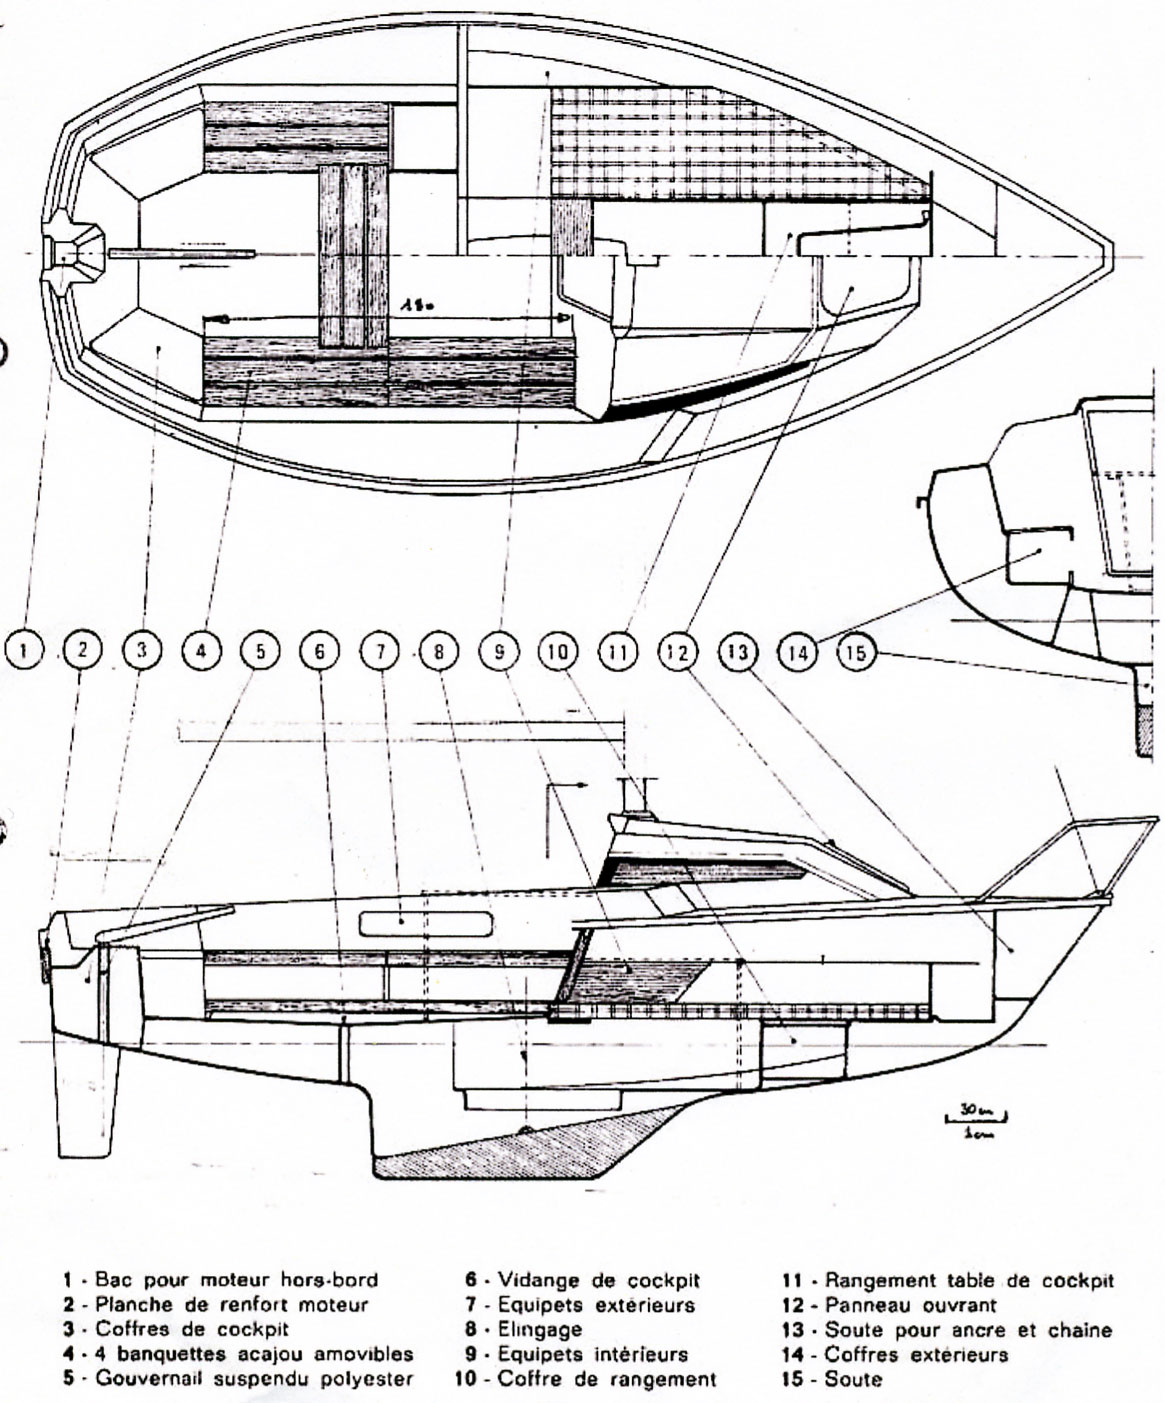 Plan aménagements edel 5 dayboat